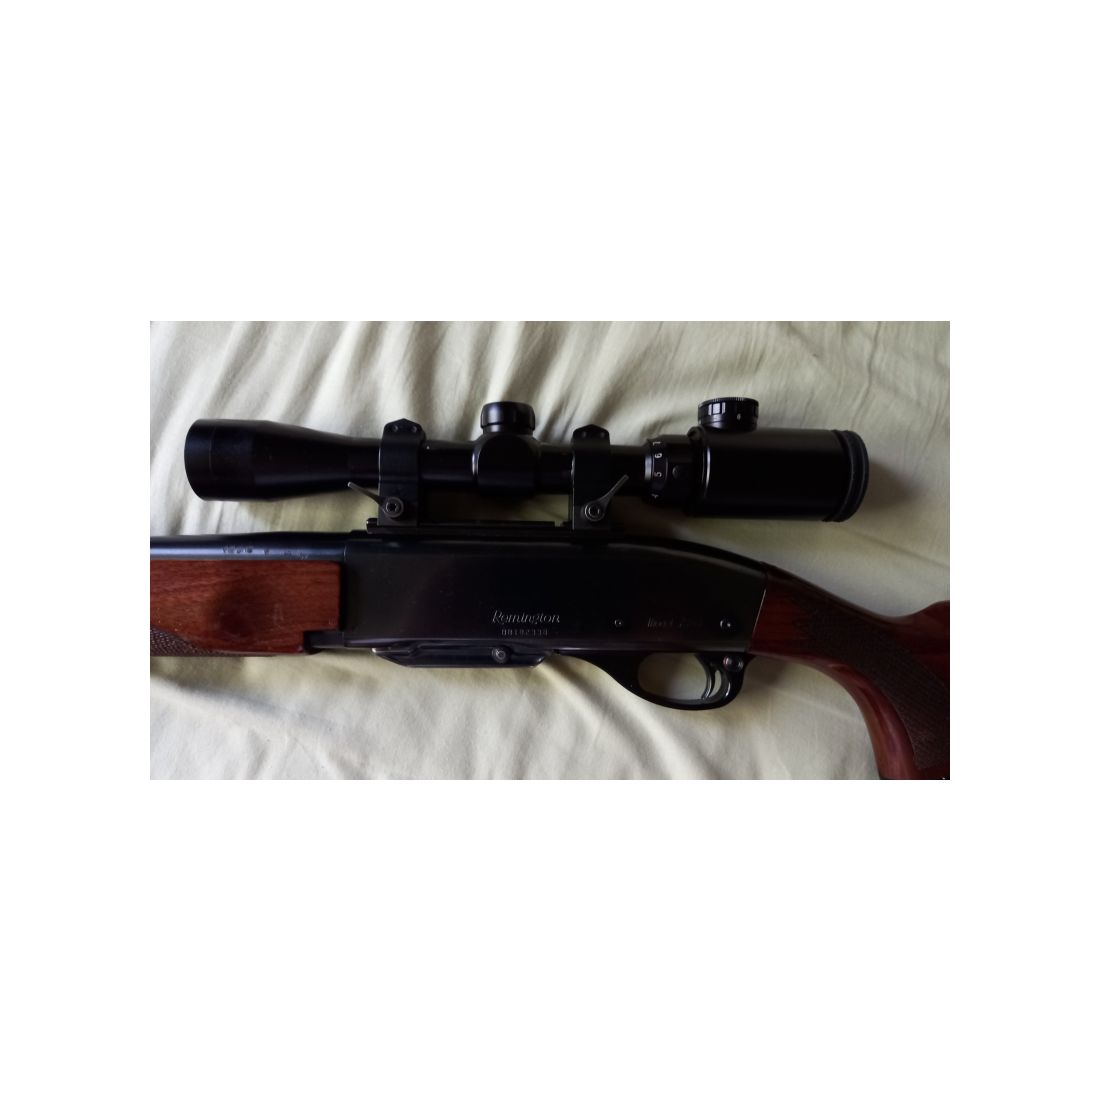 SLB Remington 7400 in 30-06 Spring.